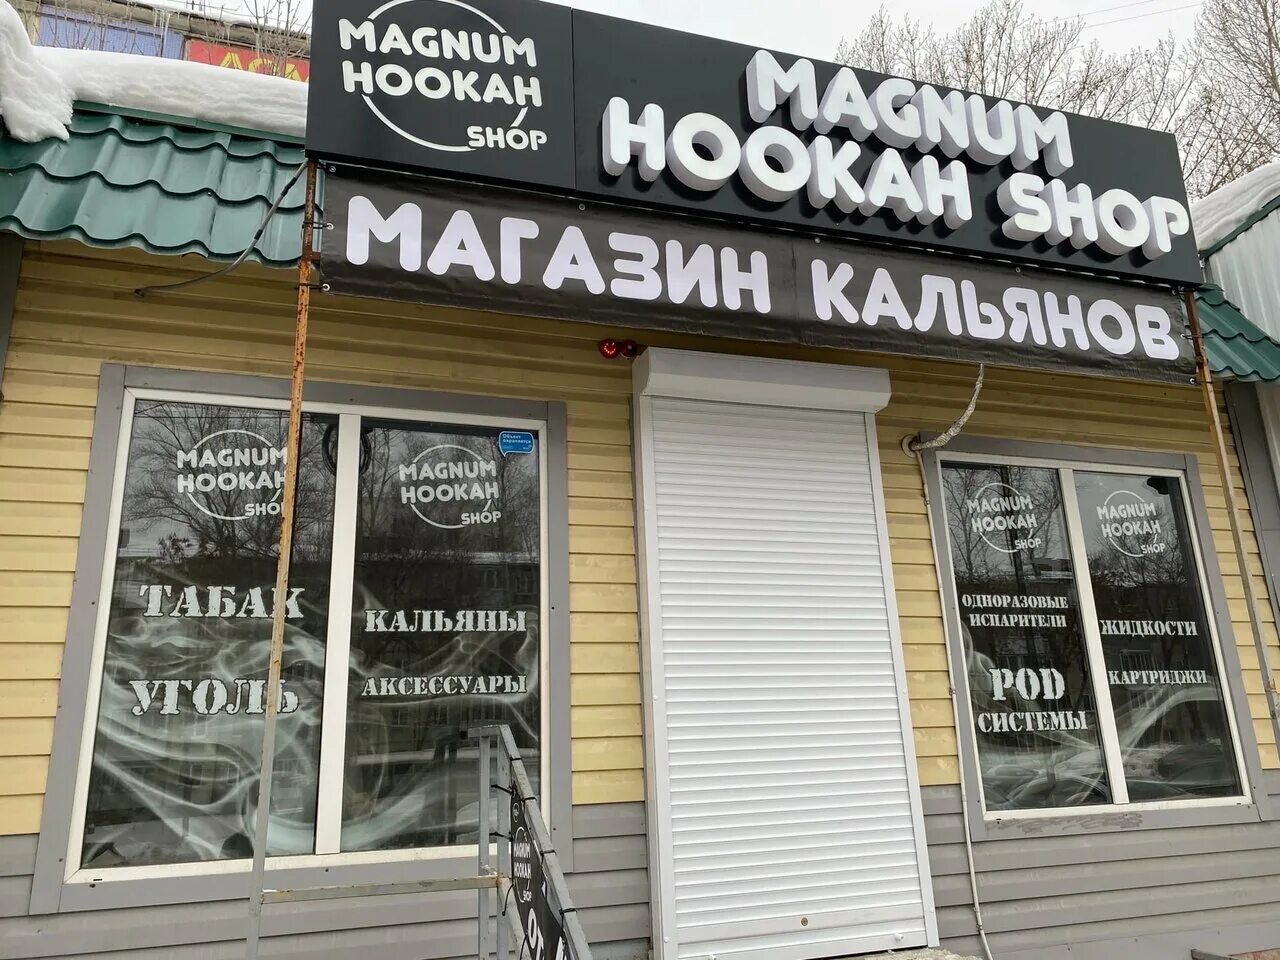 Бузулук шоп. Magnum магазин. Magnum Hookah shop. Самара Магнум шоп. Ноокан Magnum.